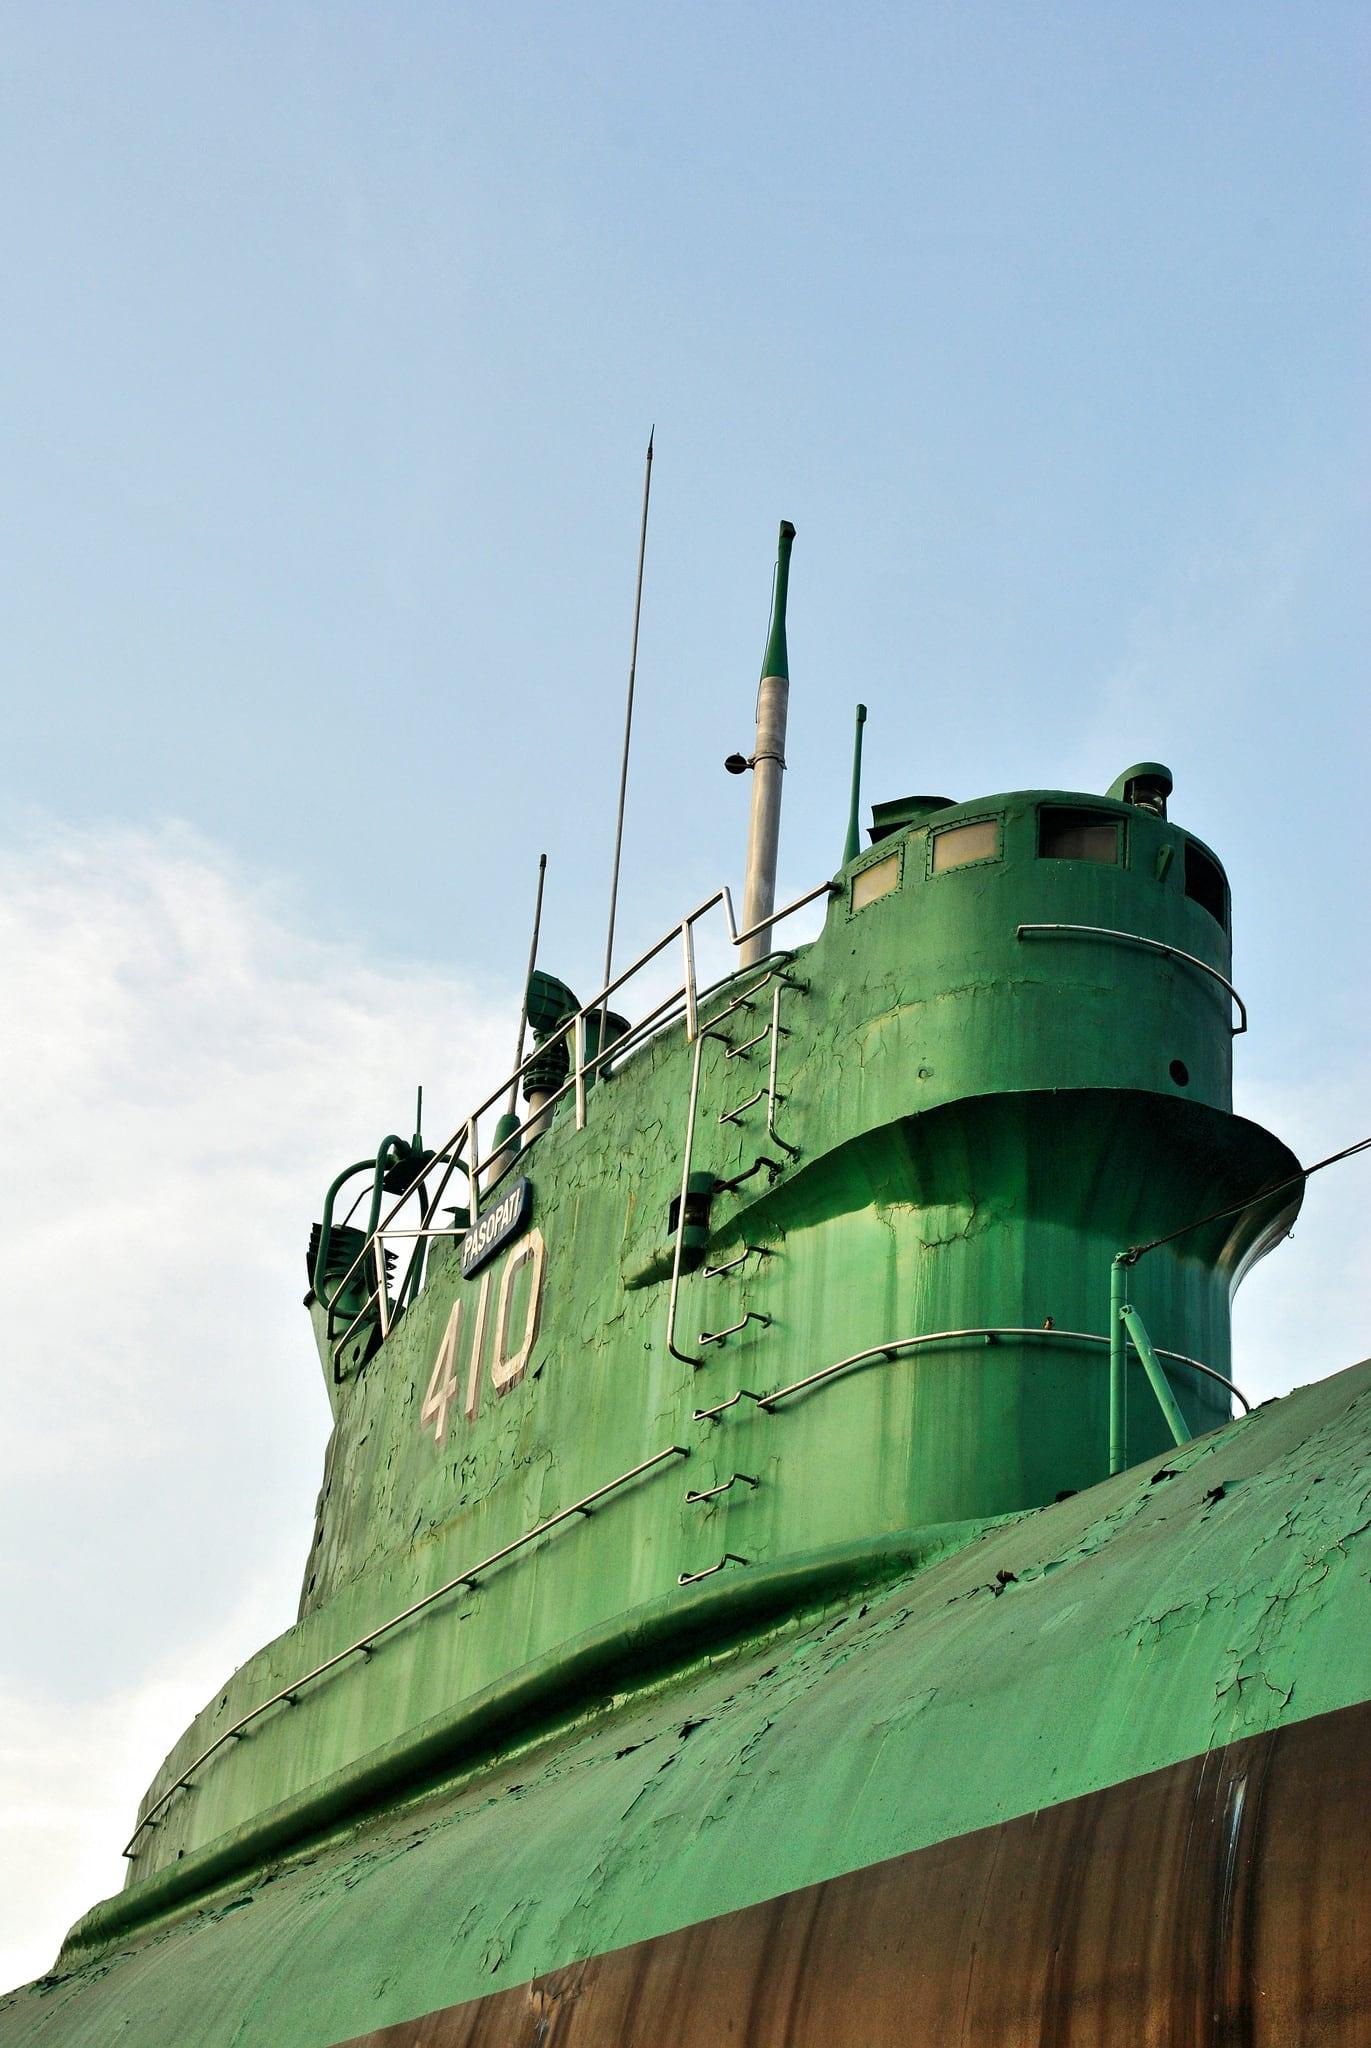 Monumen Kapal Selam की छवि. monument submarine monumen surabaya kapalselam monkasel